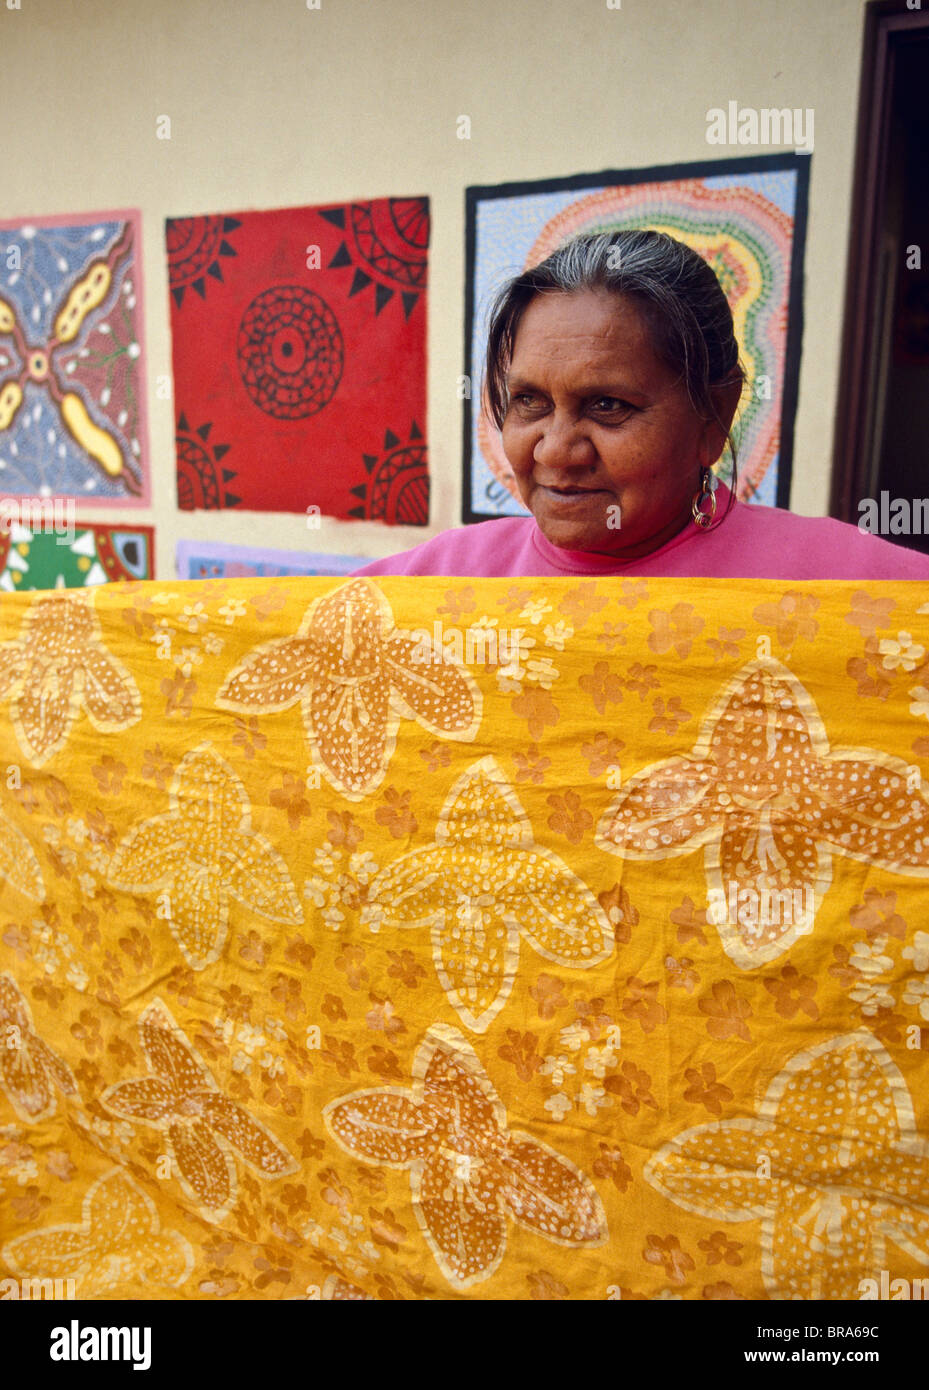 Les femmes autochtones, de batik, Australie Banque D'Images